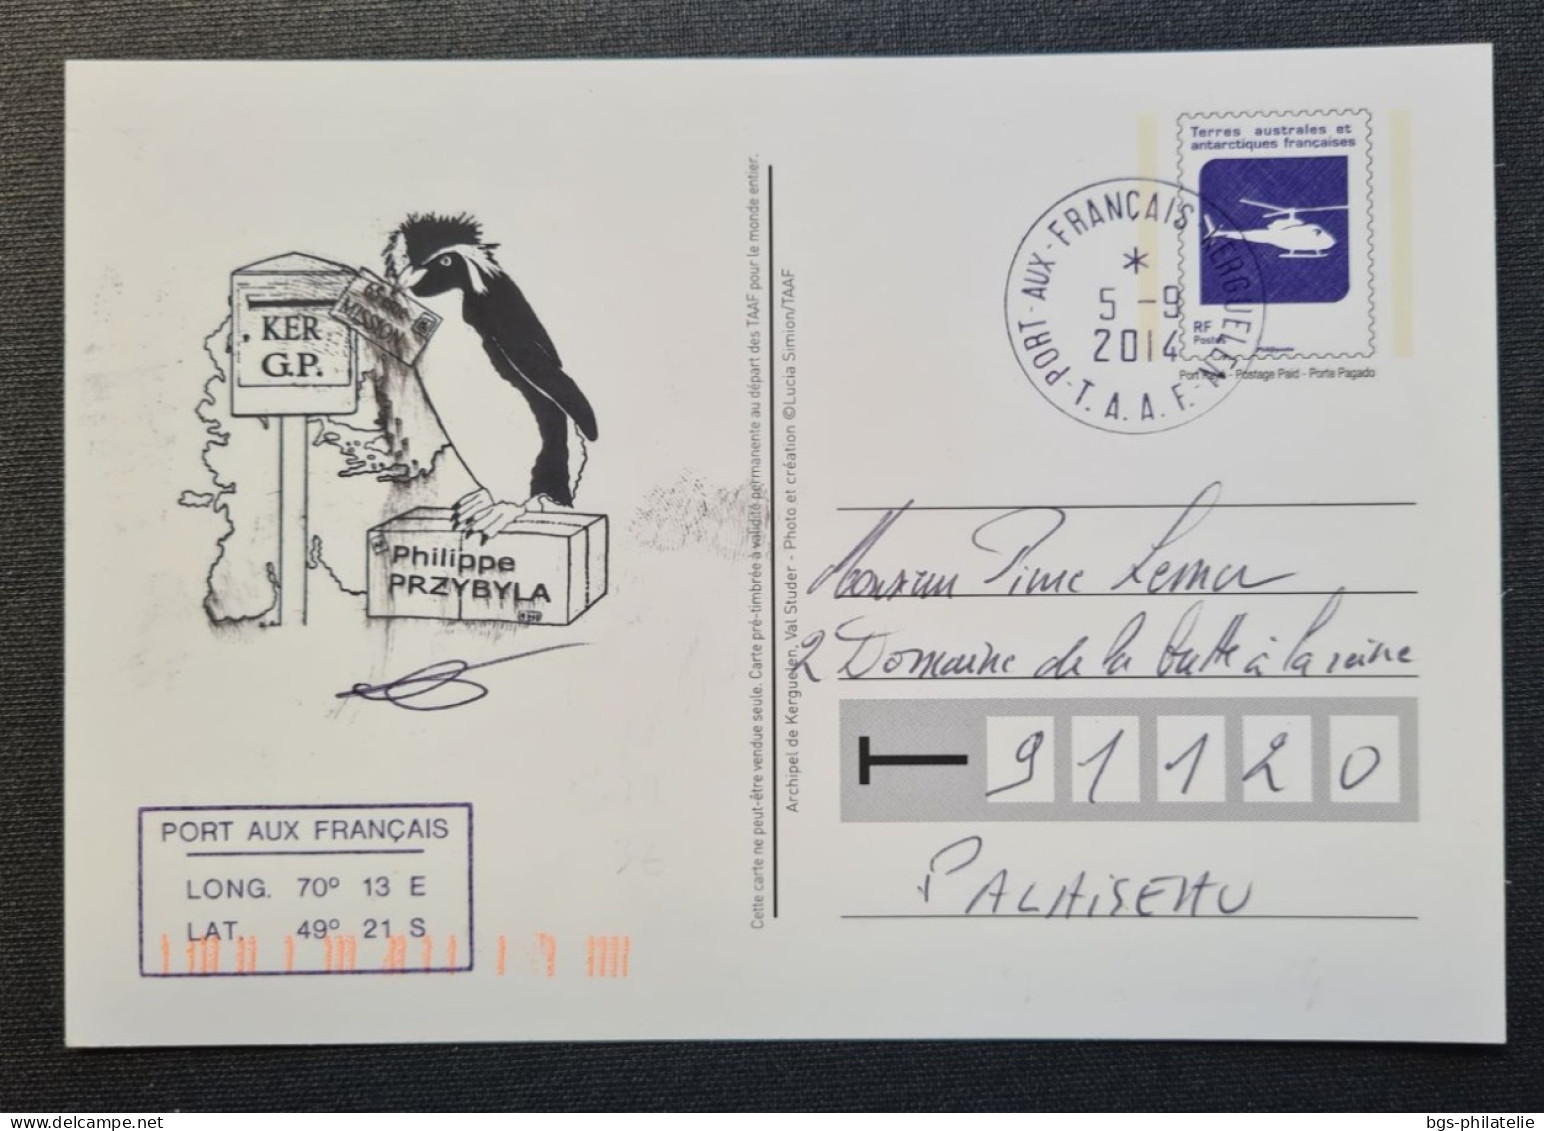 TAAF, Entier Postal Oblitéré De Kerguelen Le 5/9/2014. - Covers & Documents